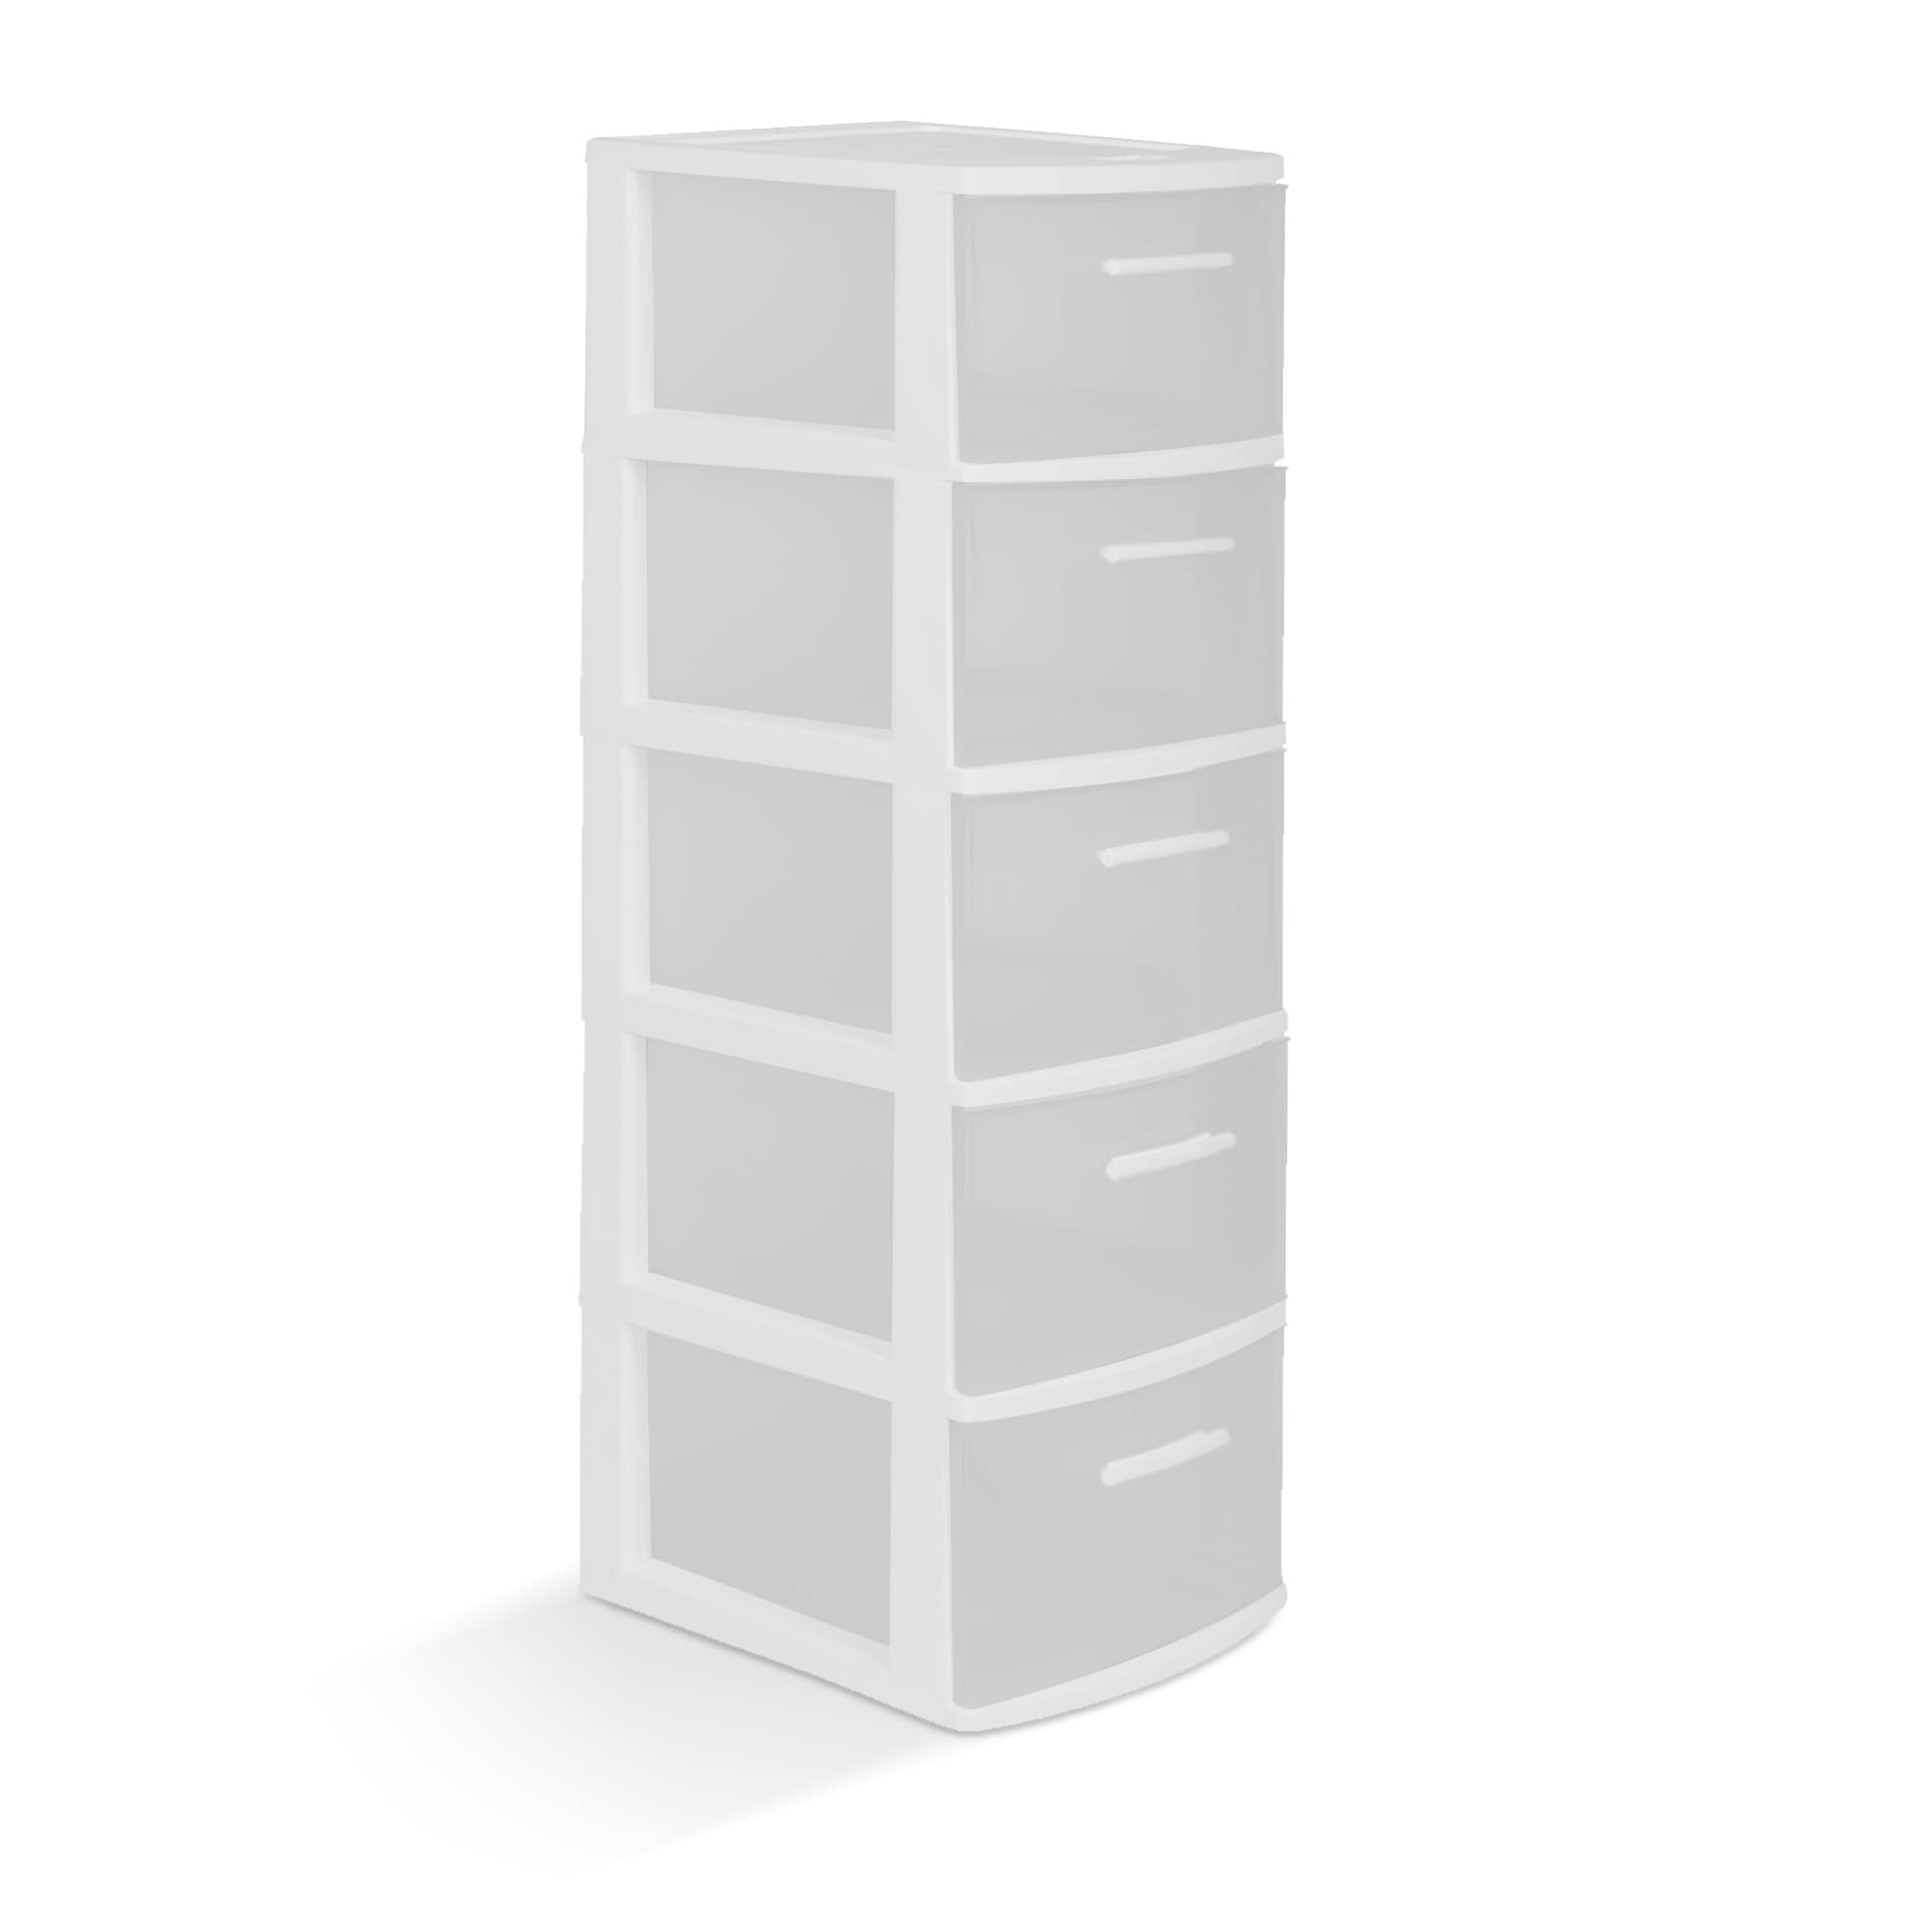 Sterilite White 5-Drawer Storage Tower